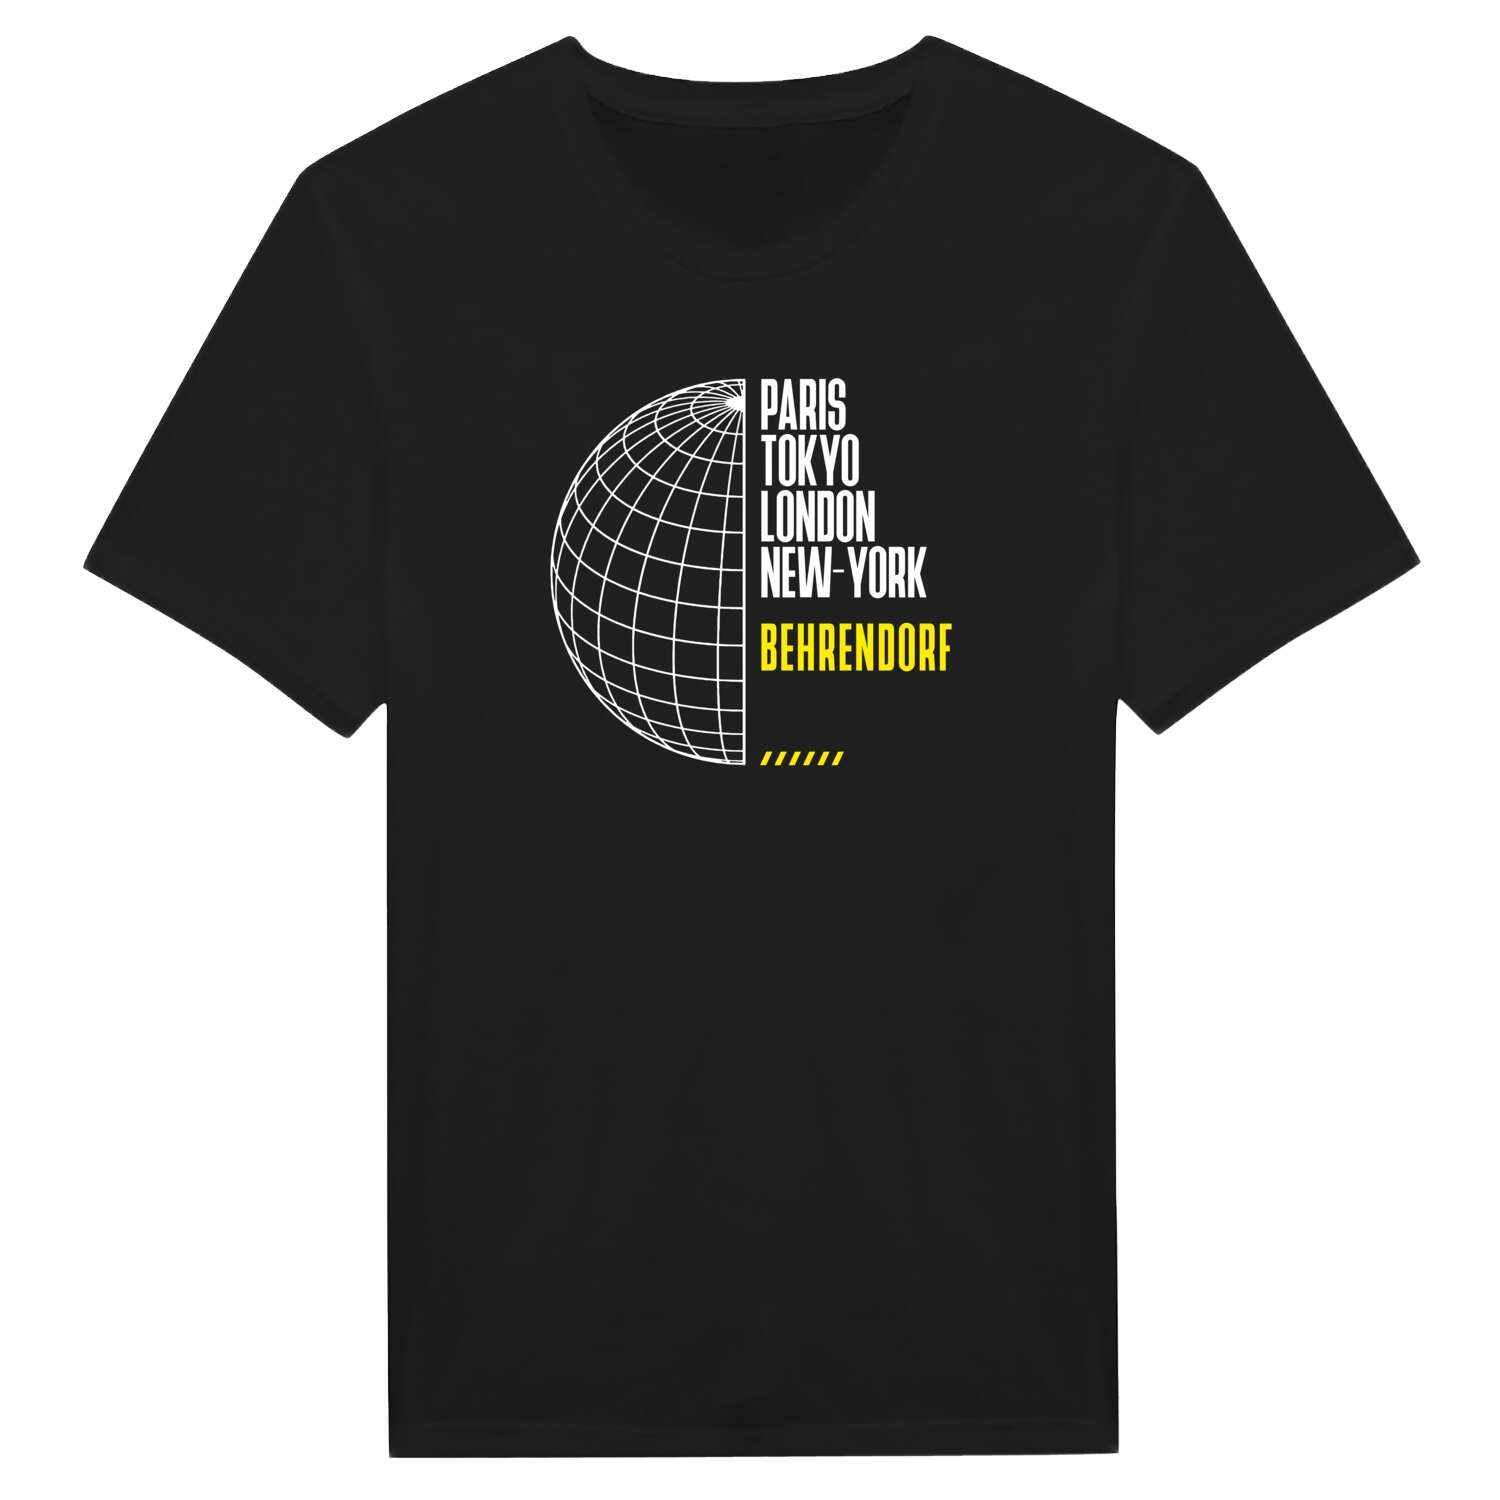 Behrendorf T-Shirt »Paris Tokyo London«